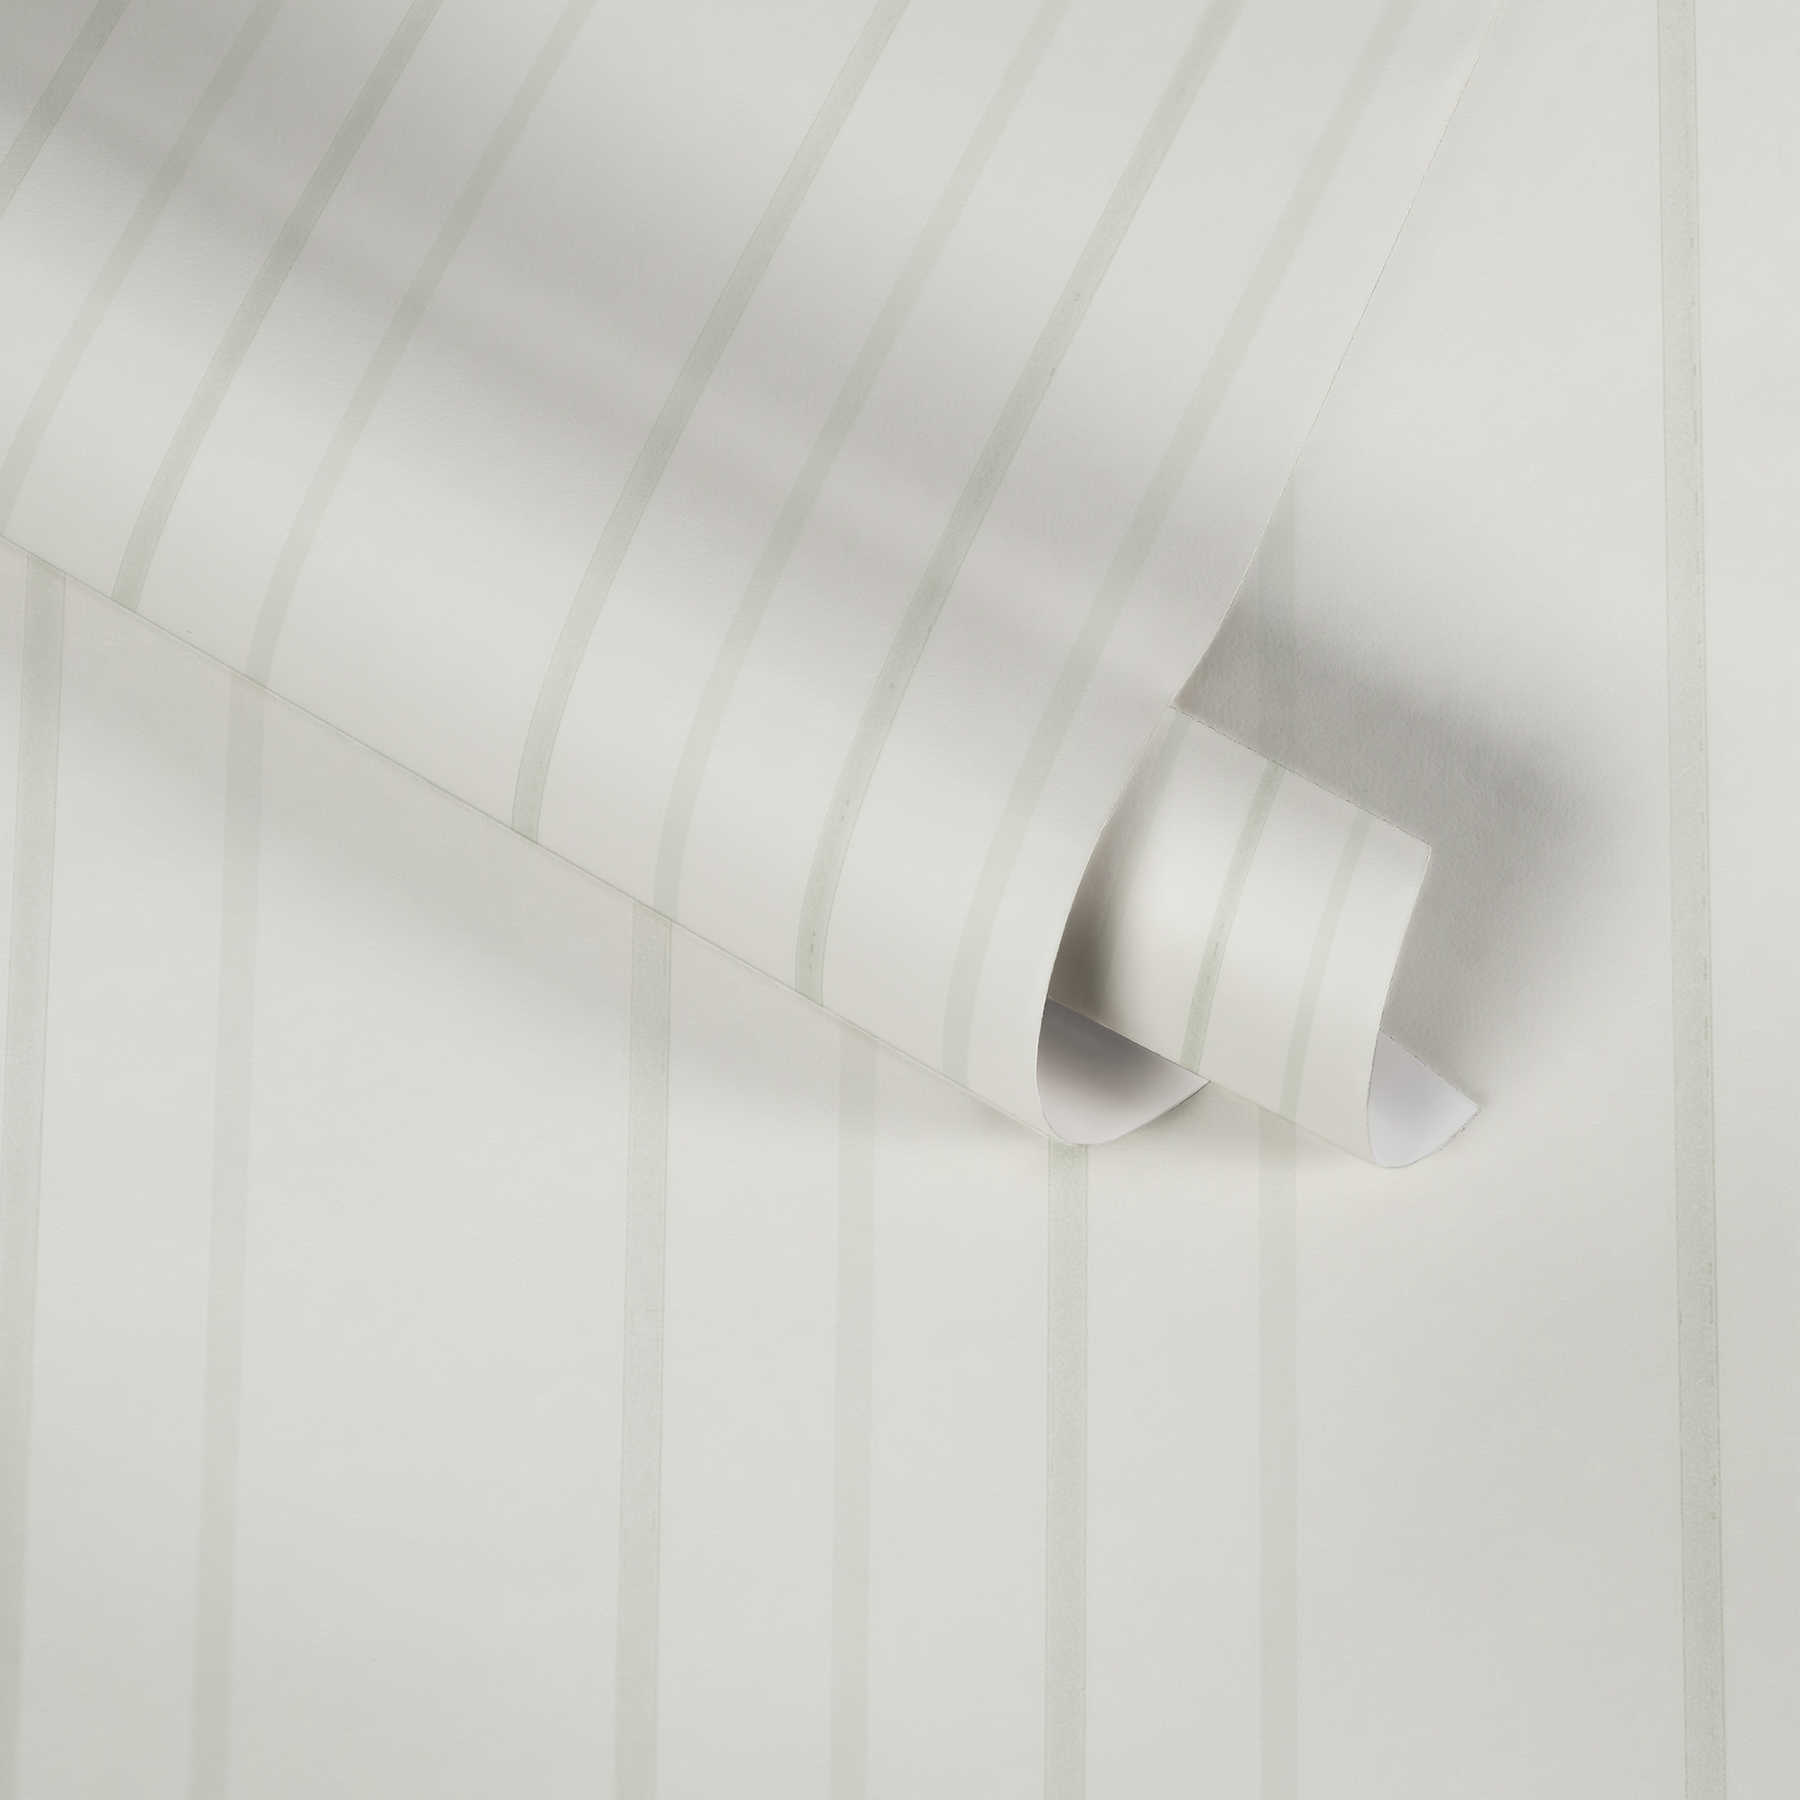             Cream white wallpaper with narrow stripe pattern - white
        